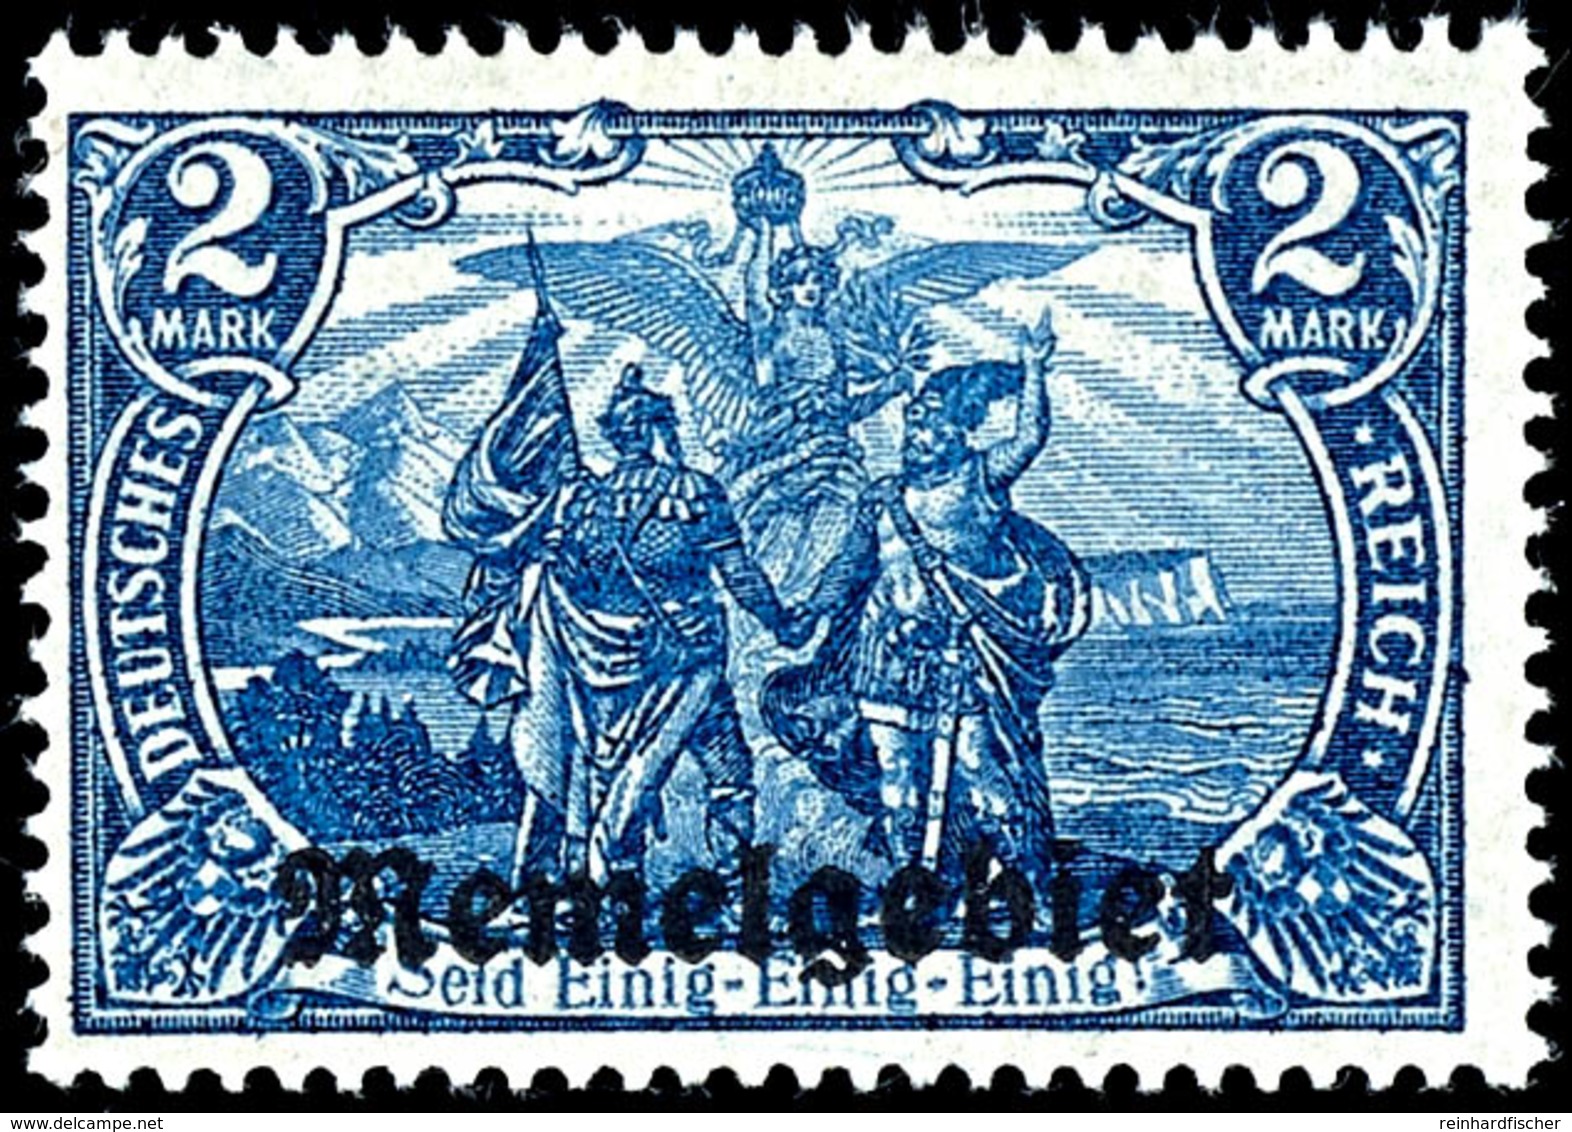 2 Mark Deutsches Reich Mit Aufdruck "Memelgebiet", Schwärzlichblau,  Tadellos Ungebraucht Mit Originalgummierung, Fotobe - Memelgebiet 1923